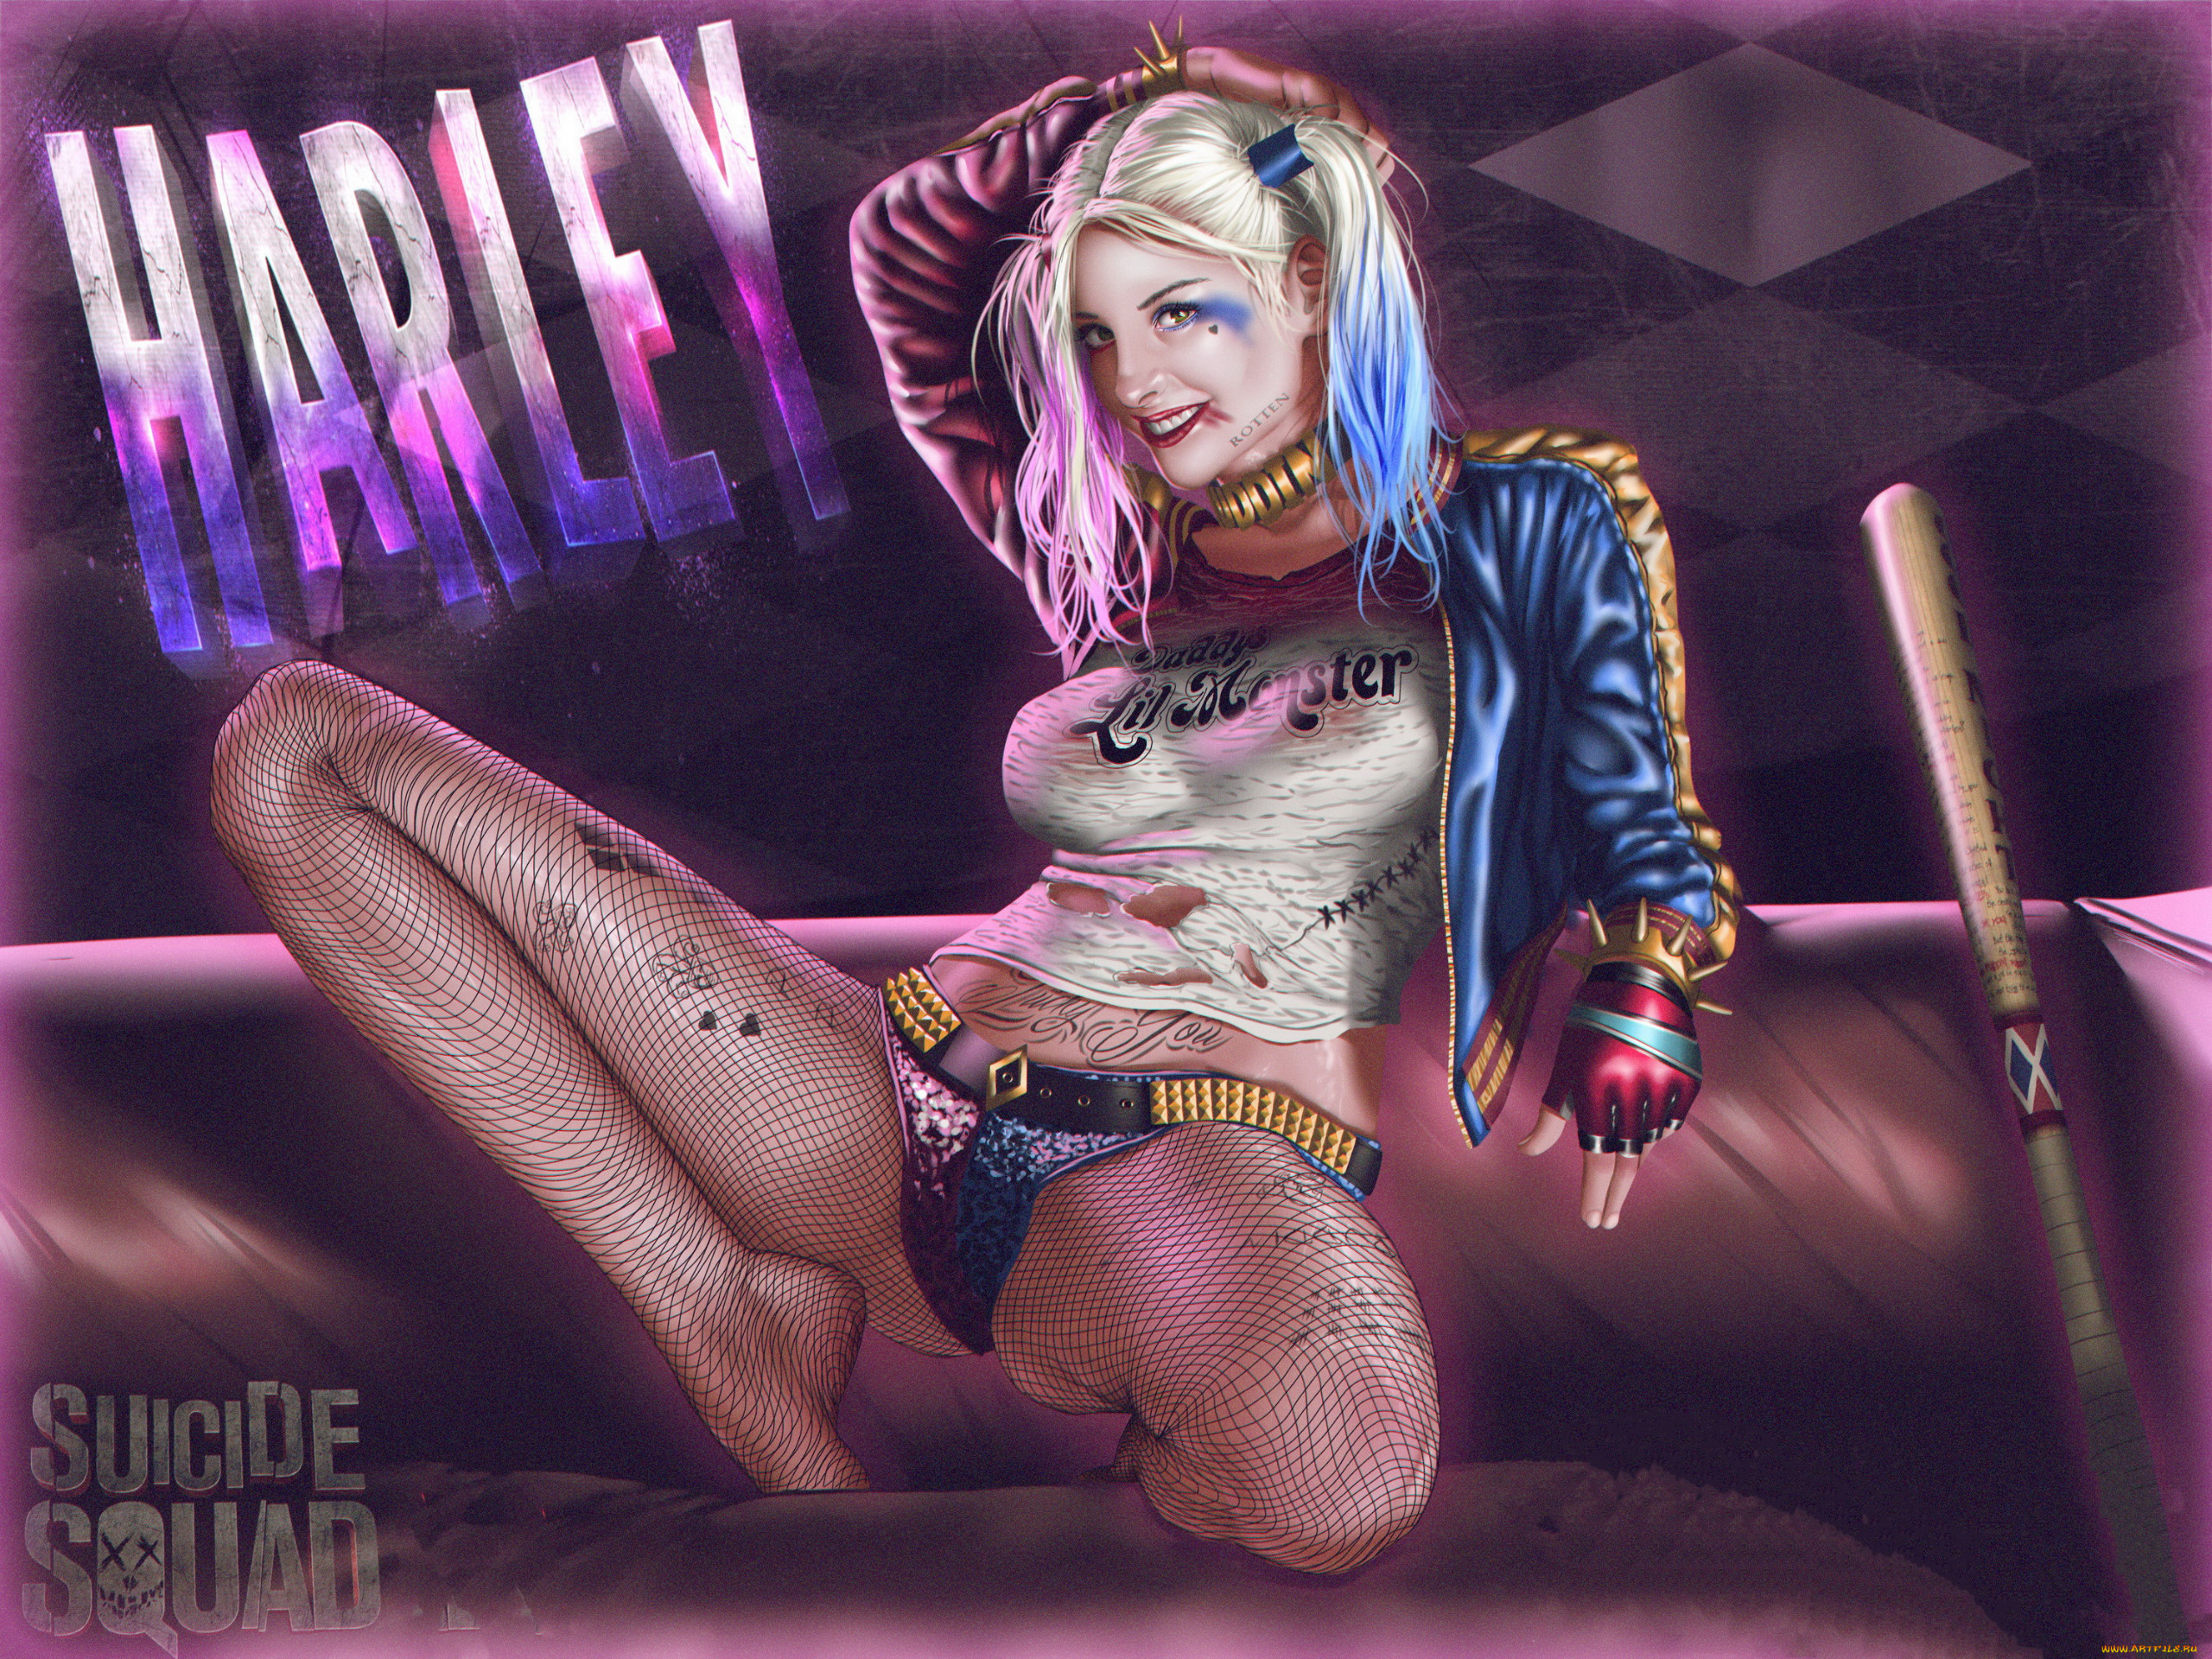 General 2560x1920 spread legs fantasy girl fantasy art Harley Quinn